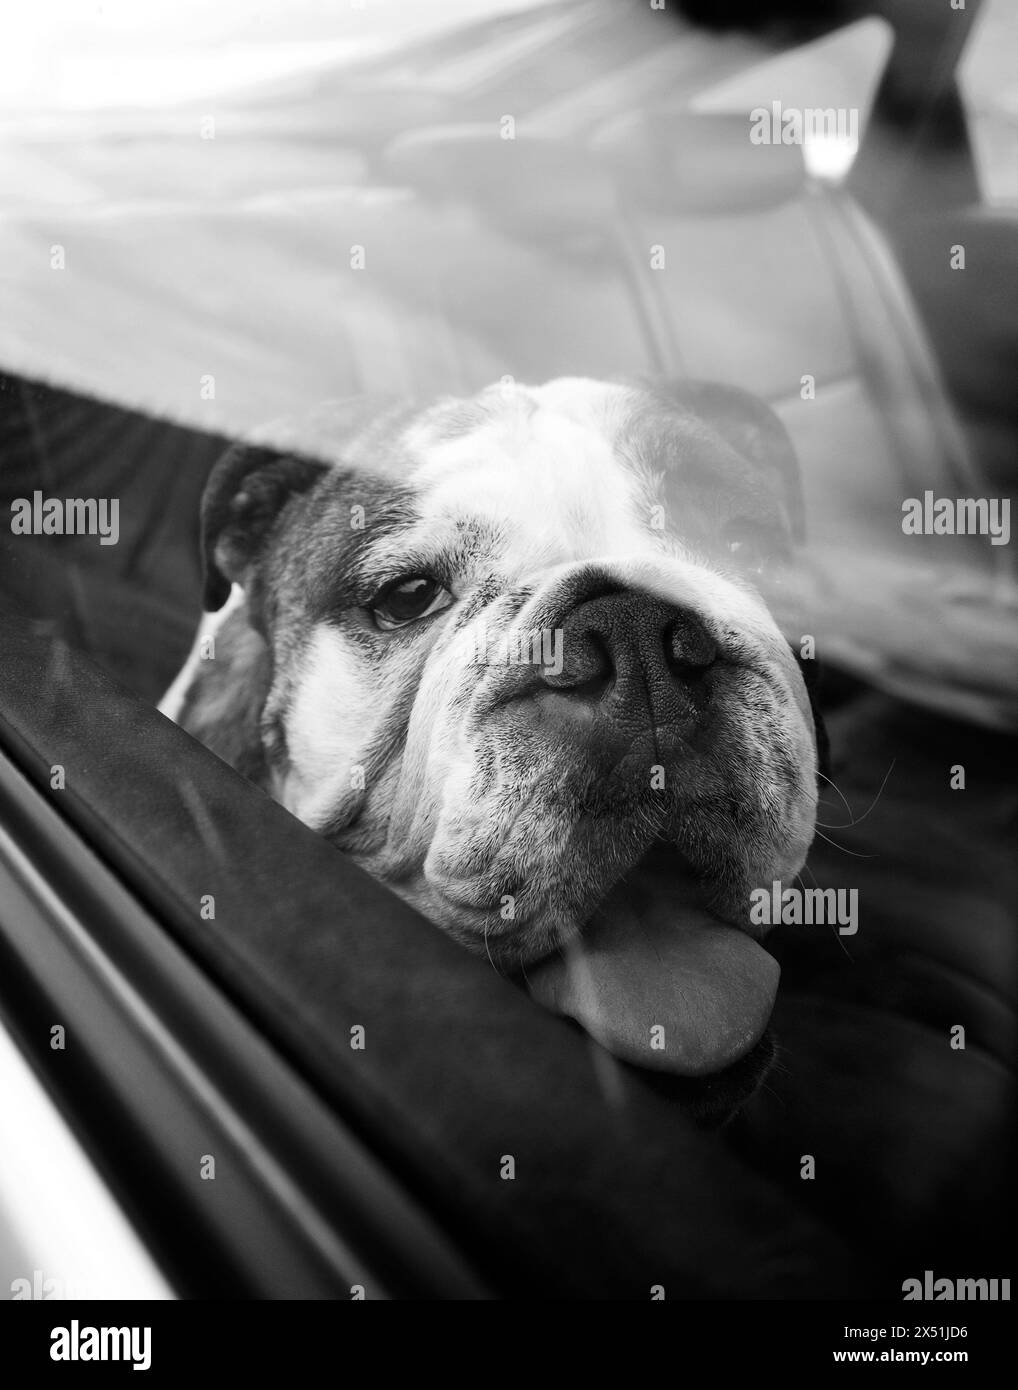 An english bulldog waits in a car Stock Photo